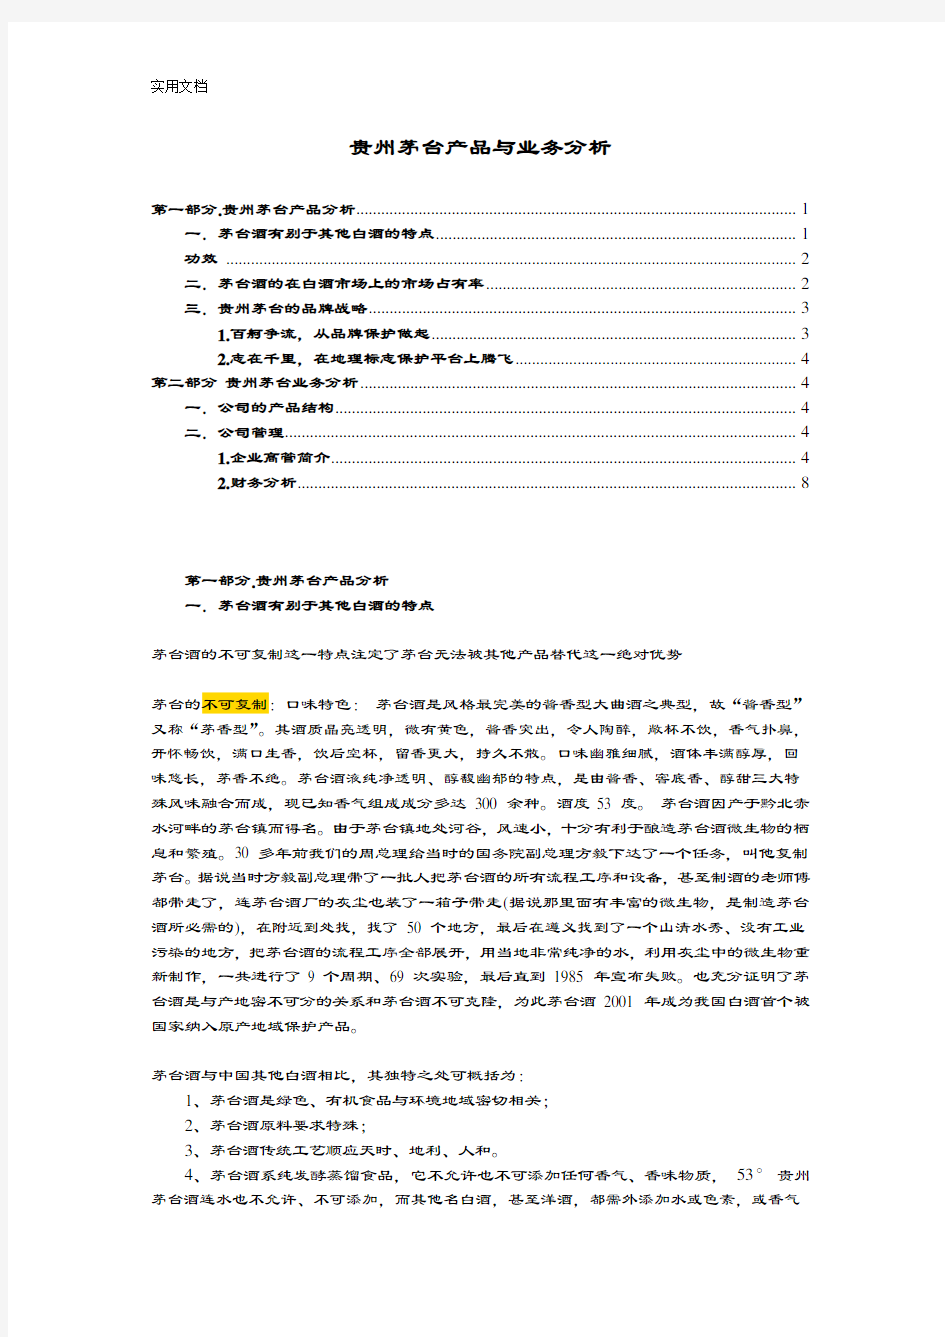 贵州茅台产品与业务研究分析报告